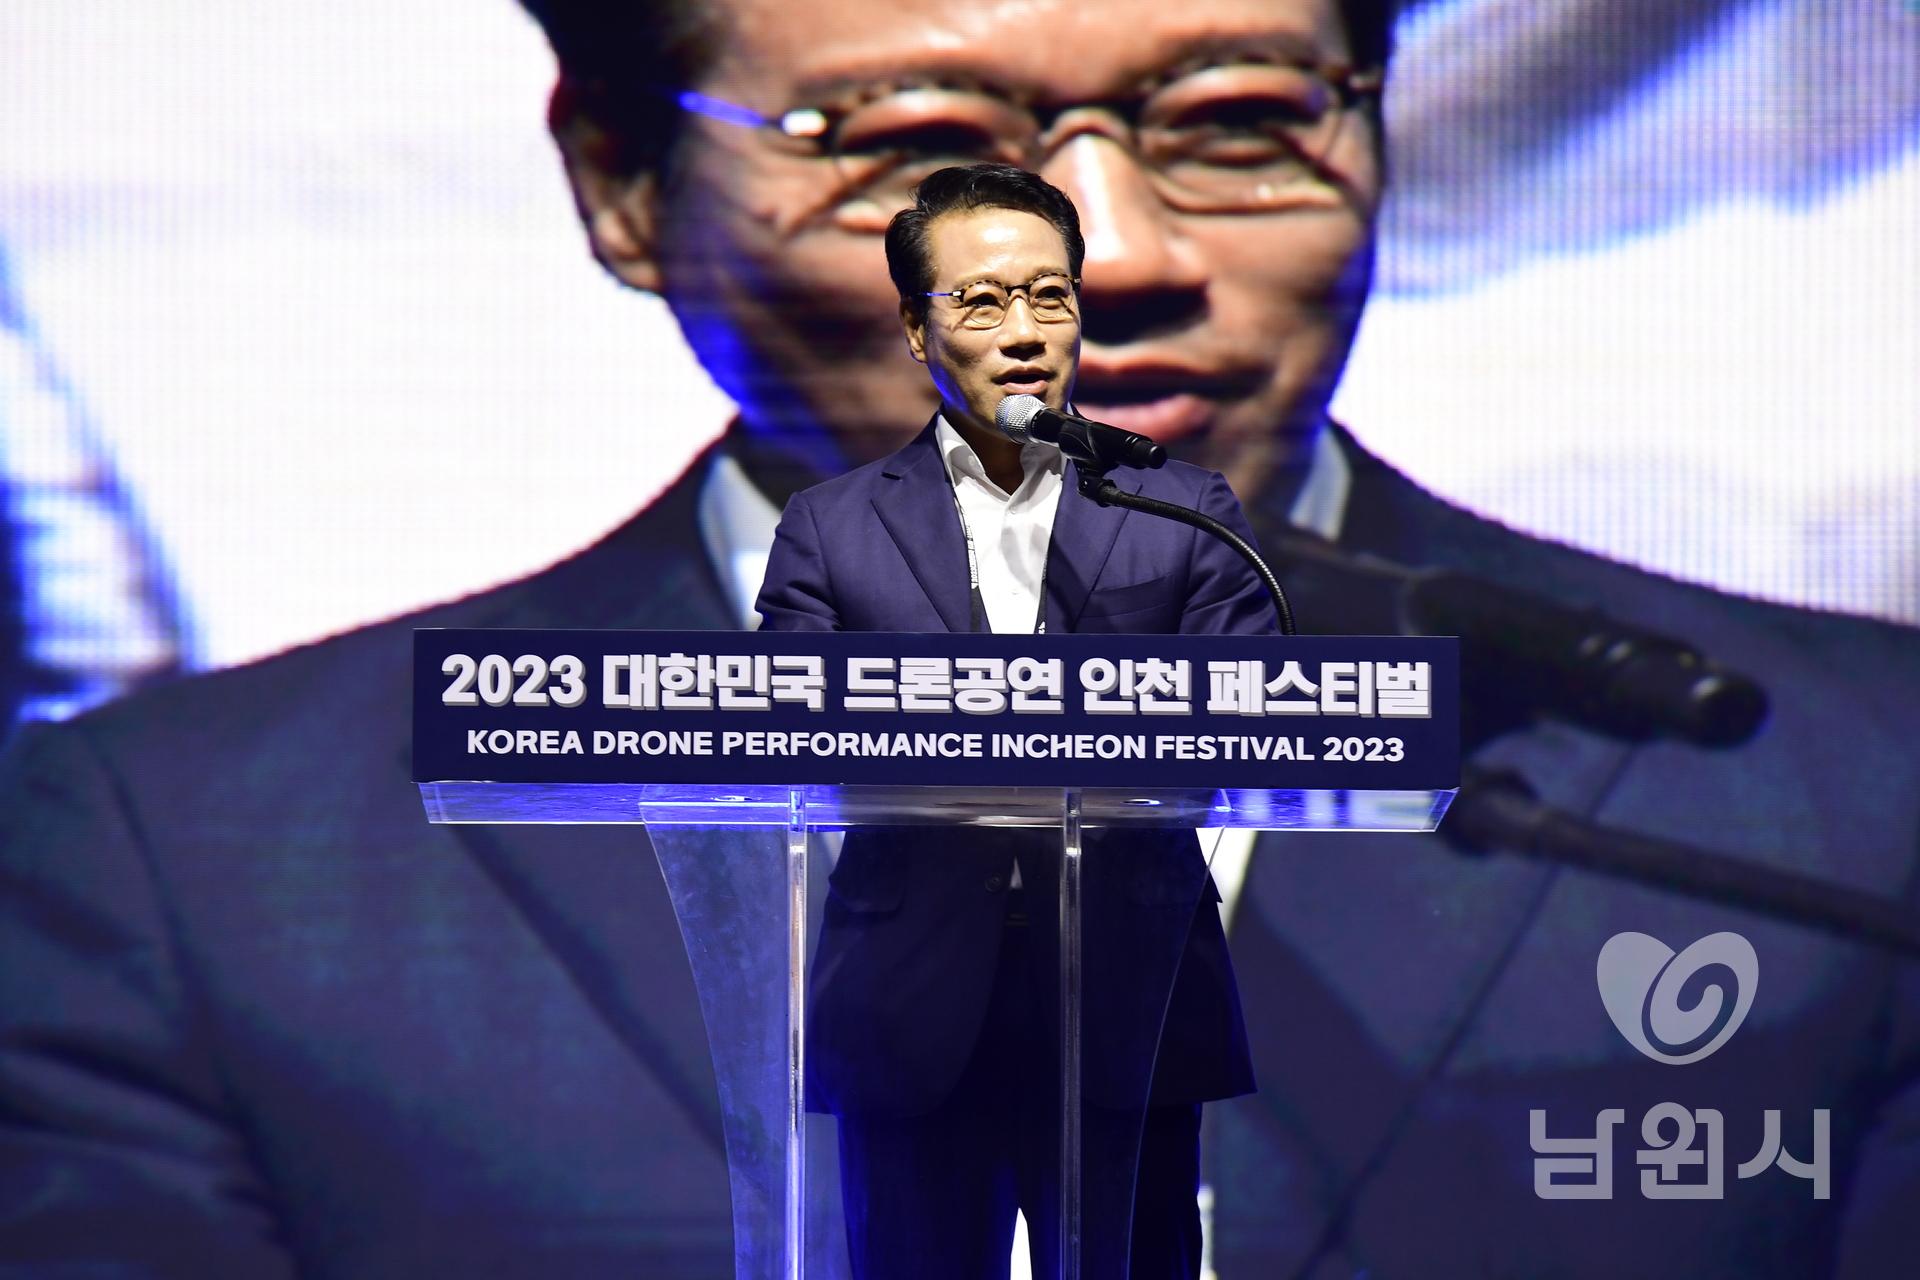 2023년 대한민국 드론 UAM박람회 인천 송도 워터마크용 사진